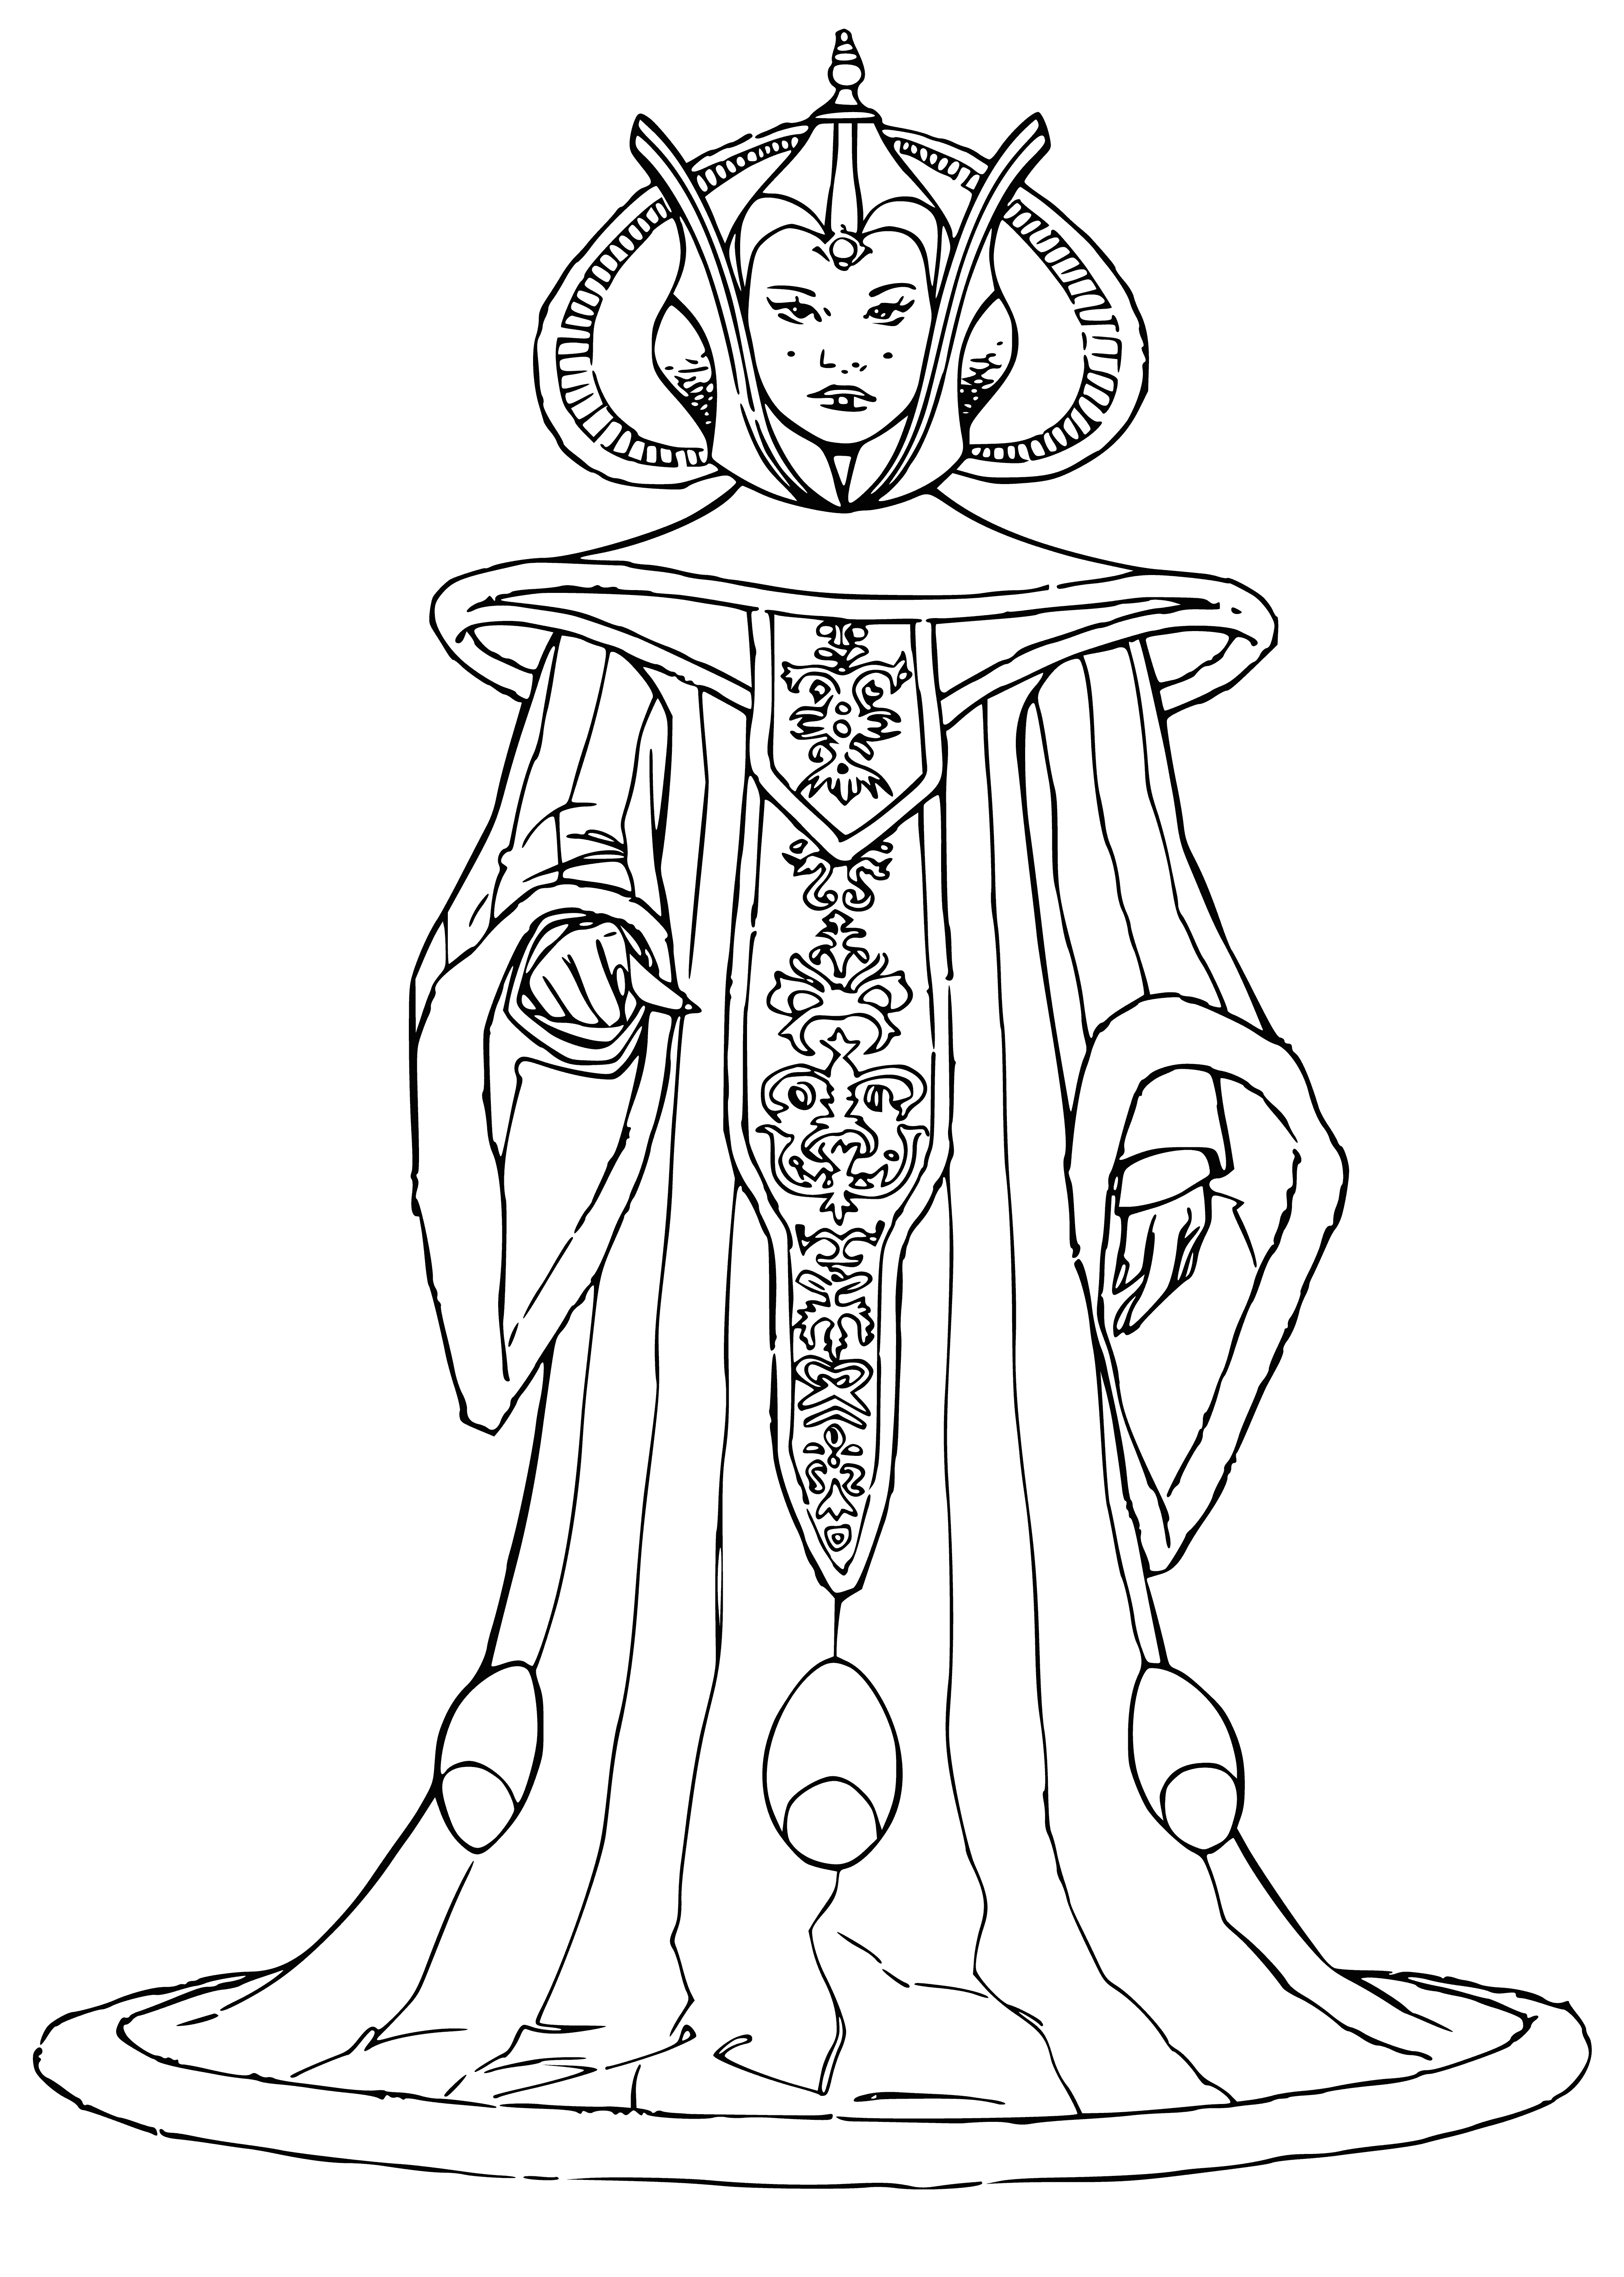 Princess Amidala coloring page